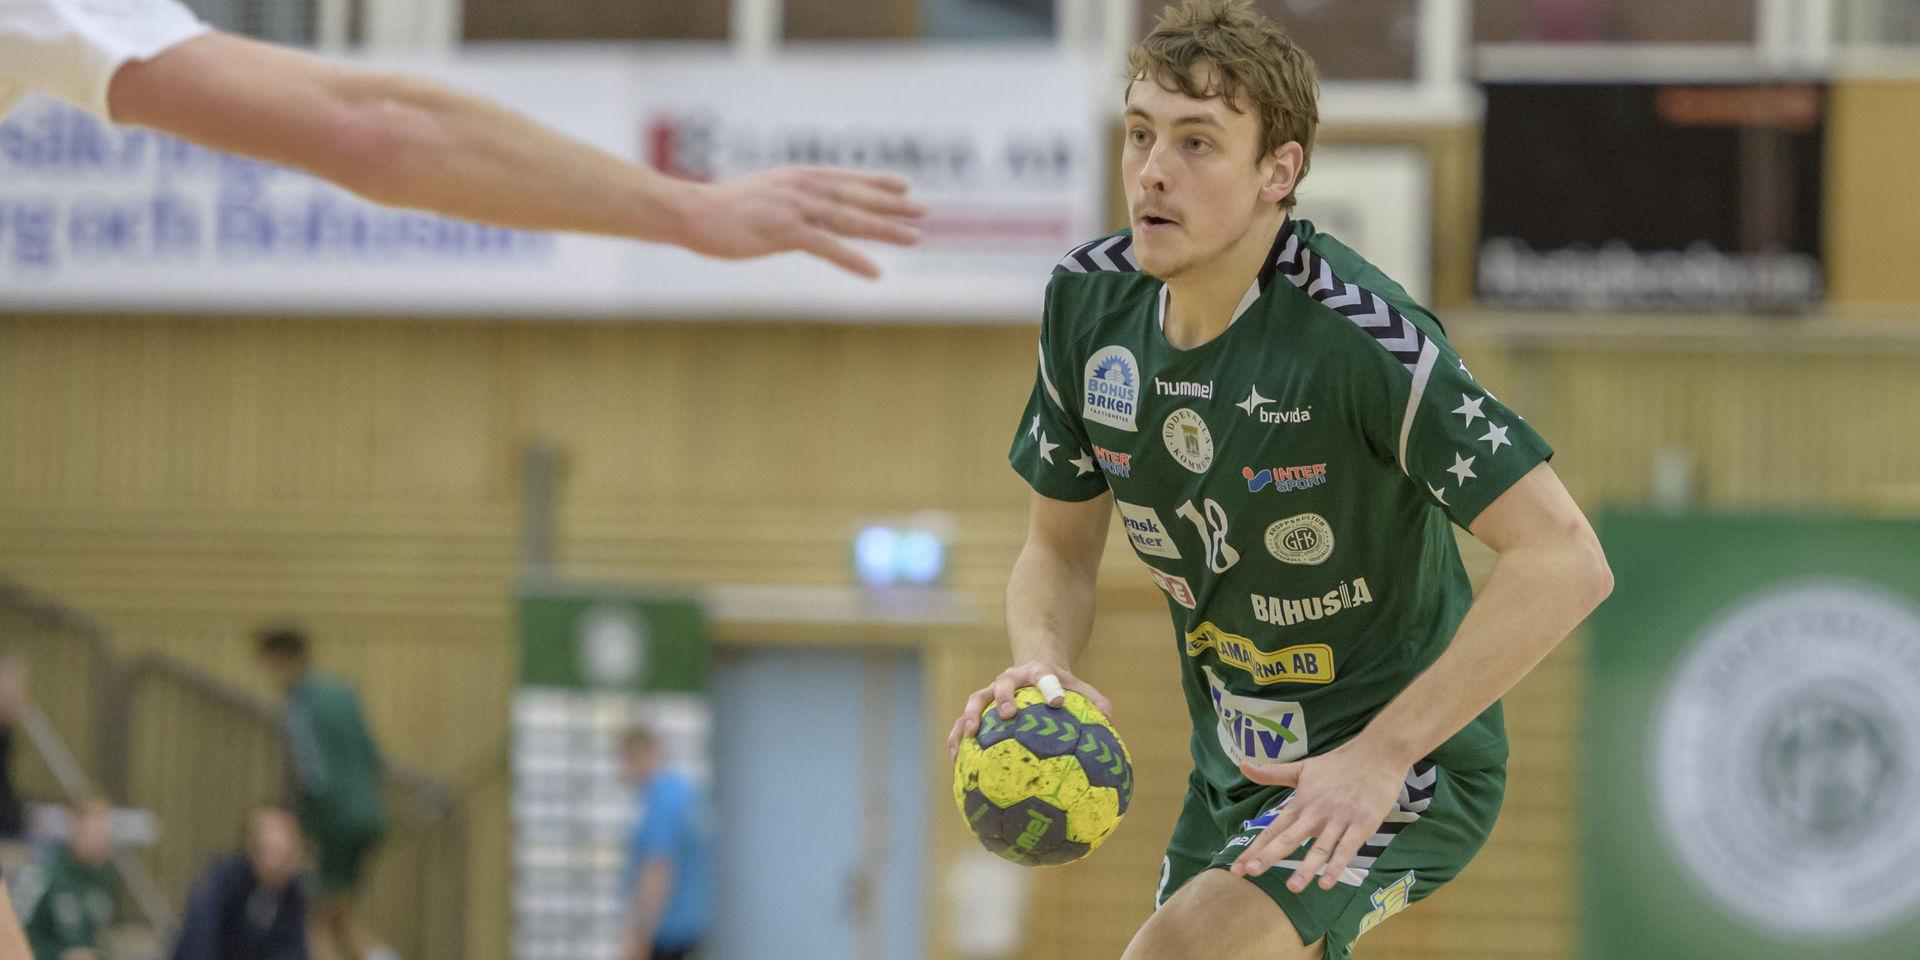 LOVANDE. 19-årige Olof de Blanche har fin kapacitet, tycker Kroppstränaren Gunnar Blombäck